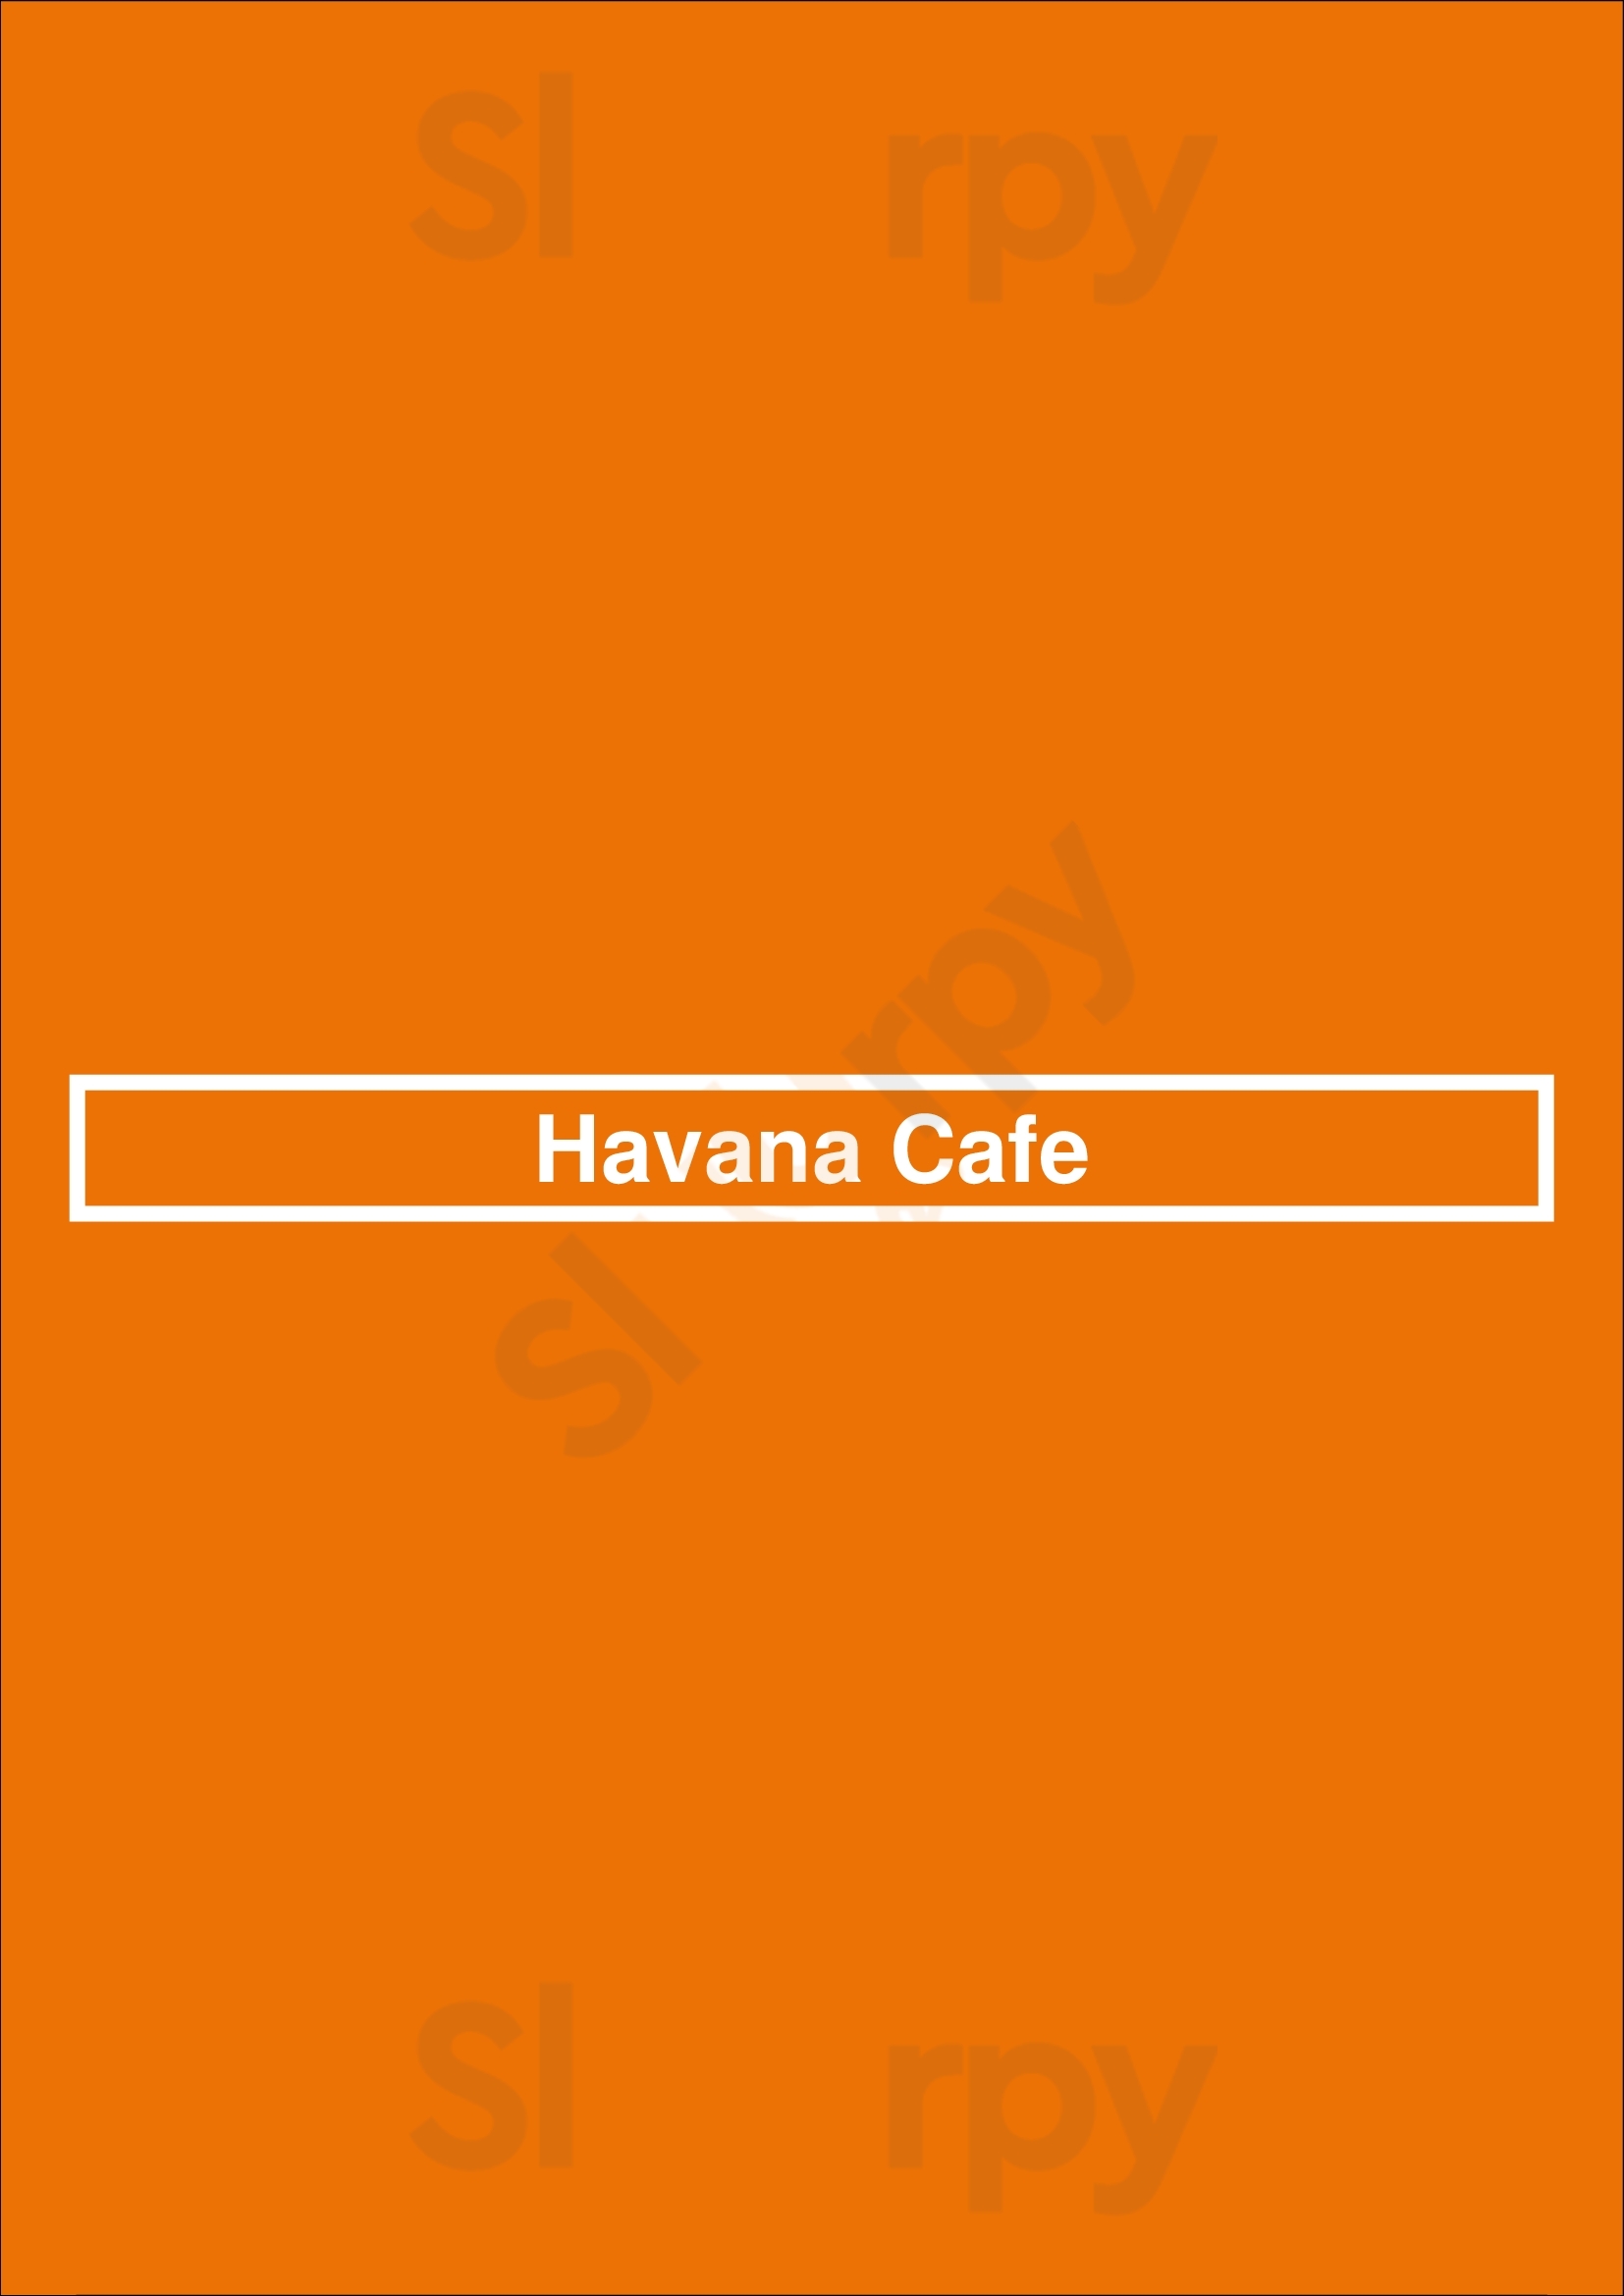 Havana Cafe Dallas Menu - 1